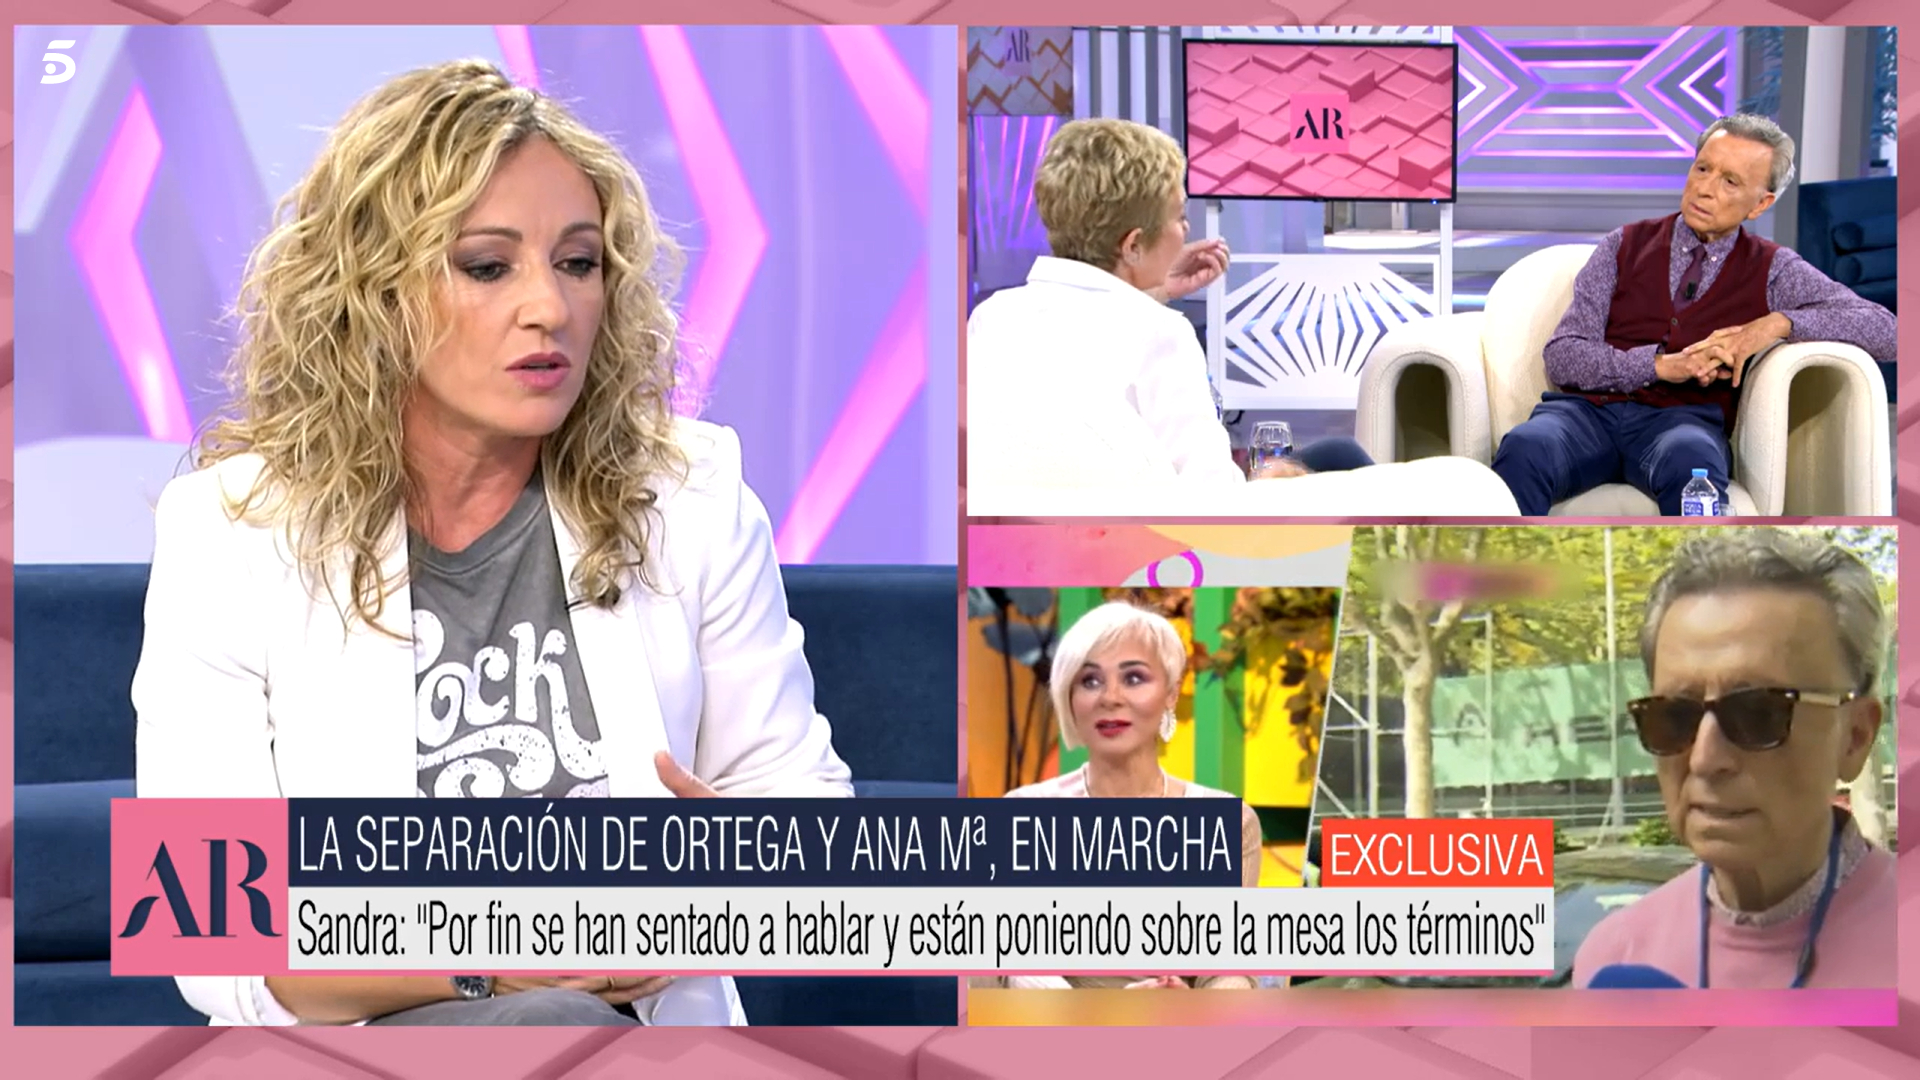 Sandra Aladro ha dado detalles sobre el divorcio de Ana María y Ortega Cano.